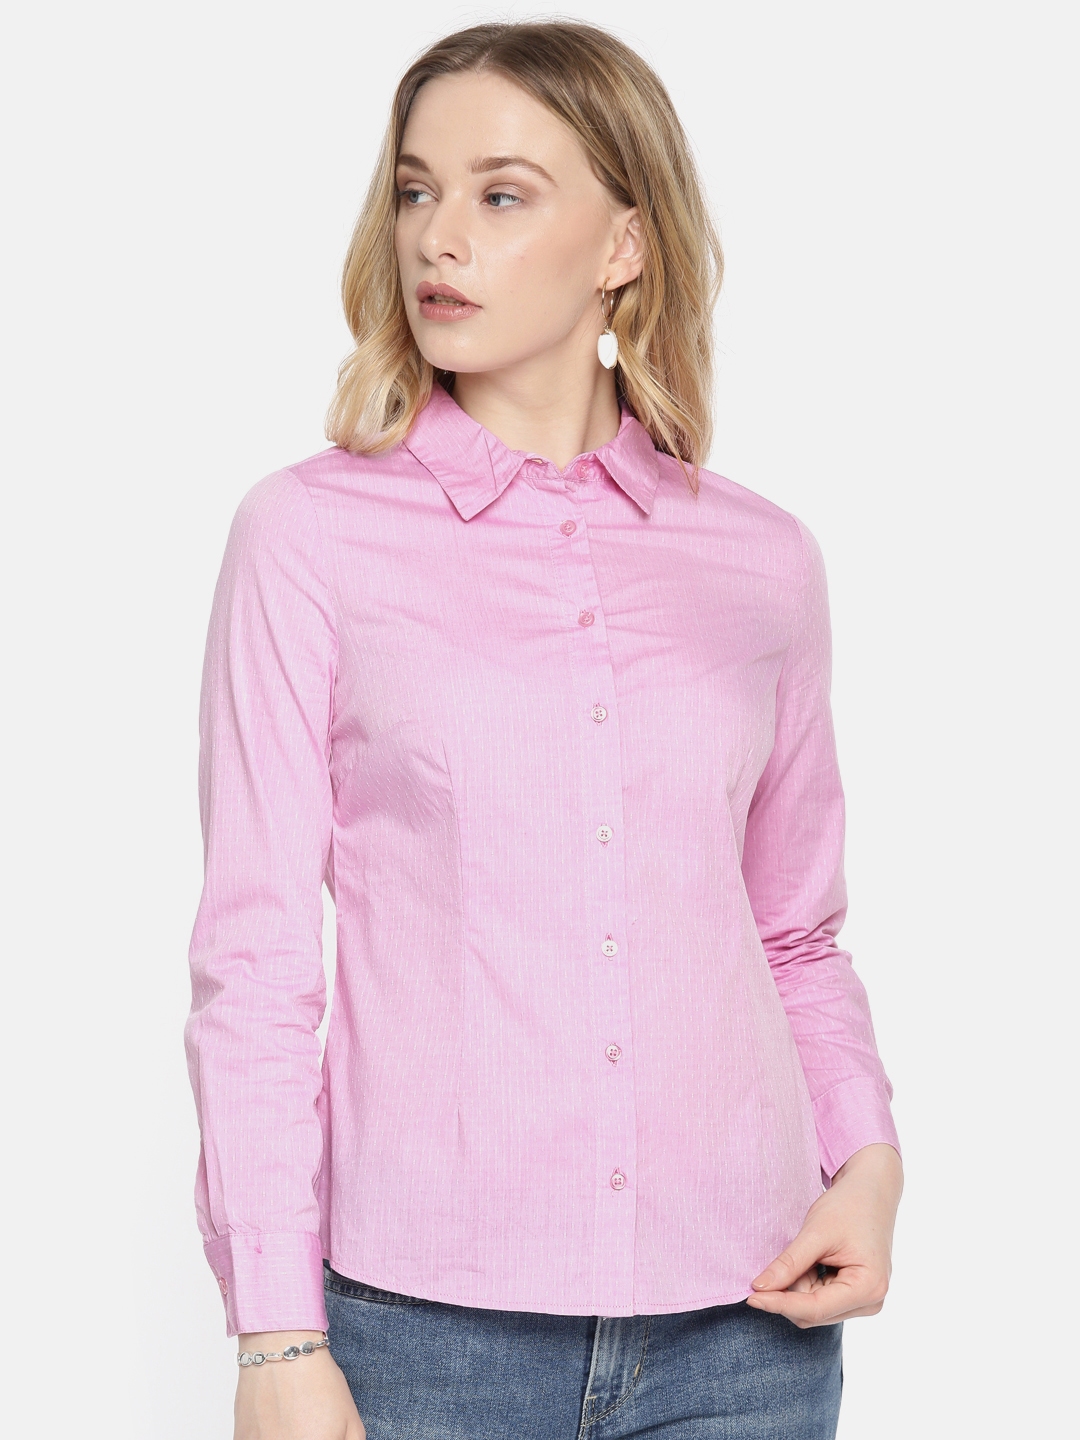 Buy Vero Moda Women Pink Shirt - Shirts for Women 9404527 | Myntra